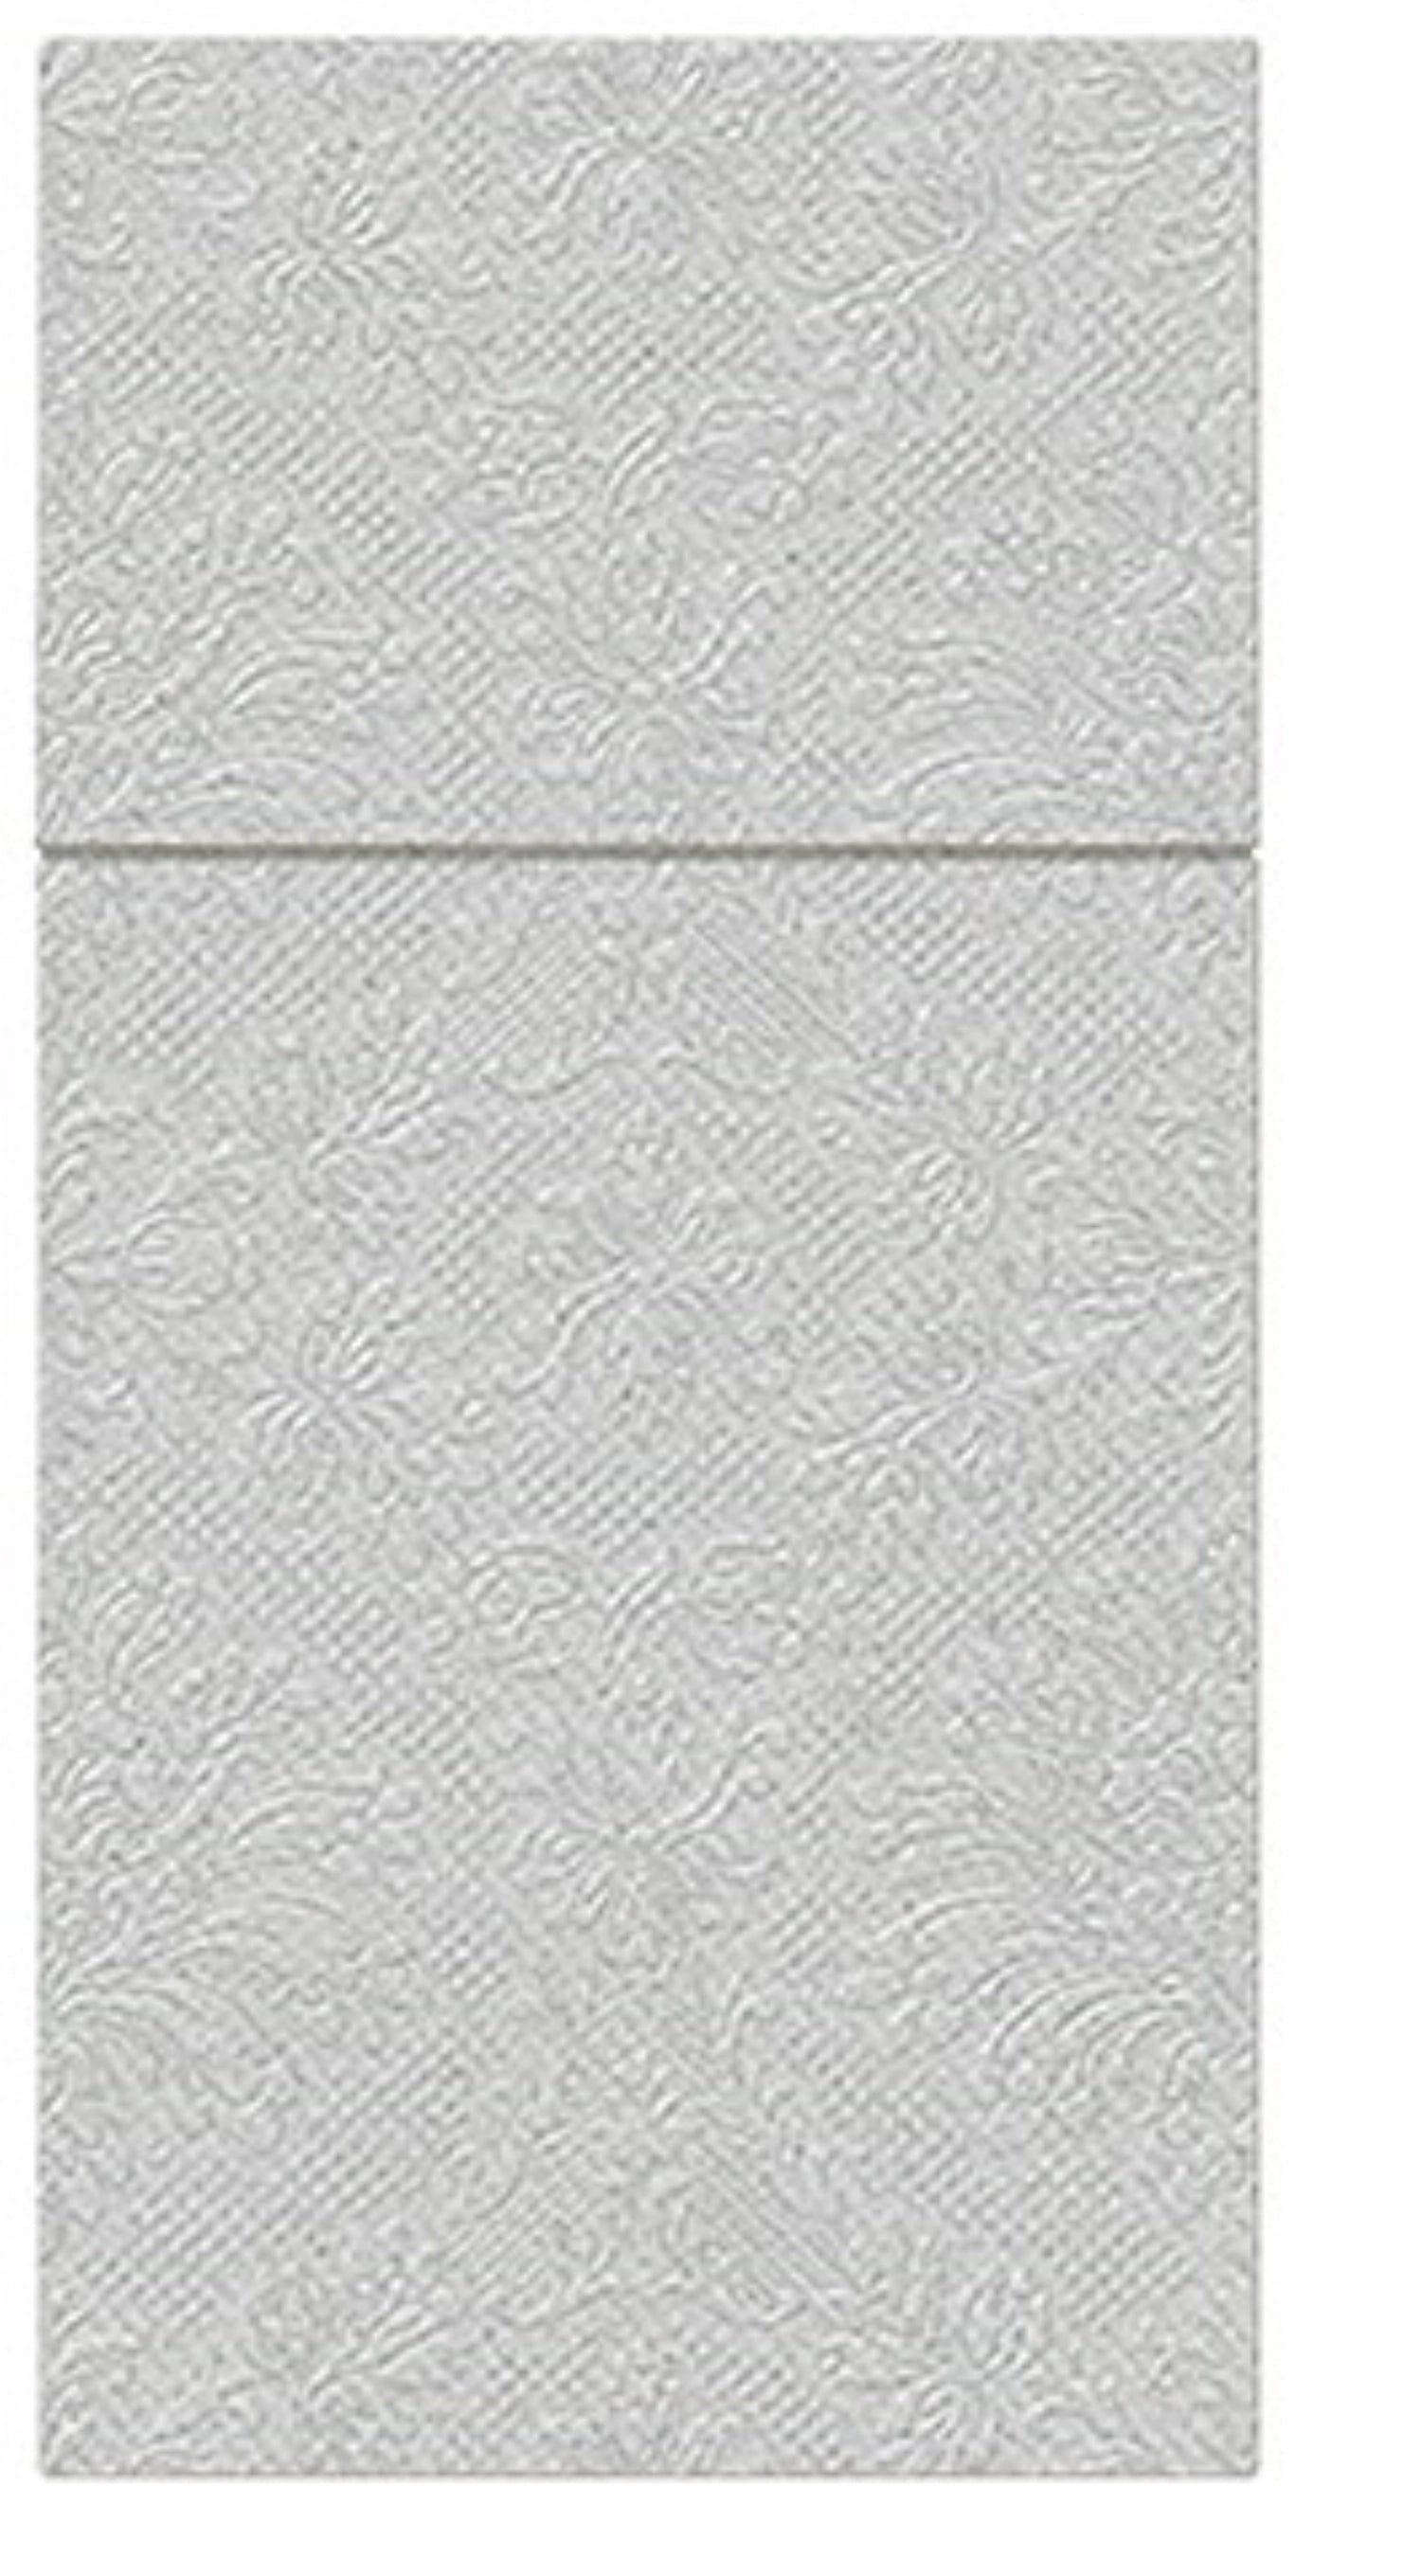 Bestecktasche 25x Inspiration classic silber, 40x40cm - KAQTU Design